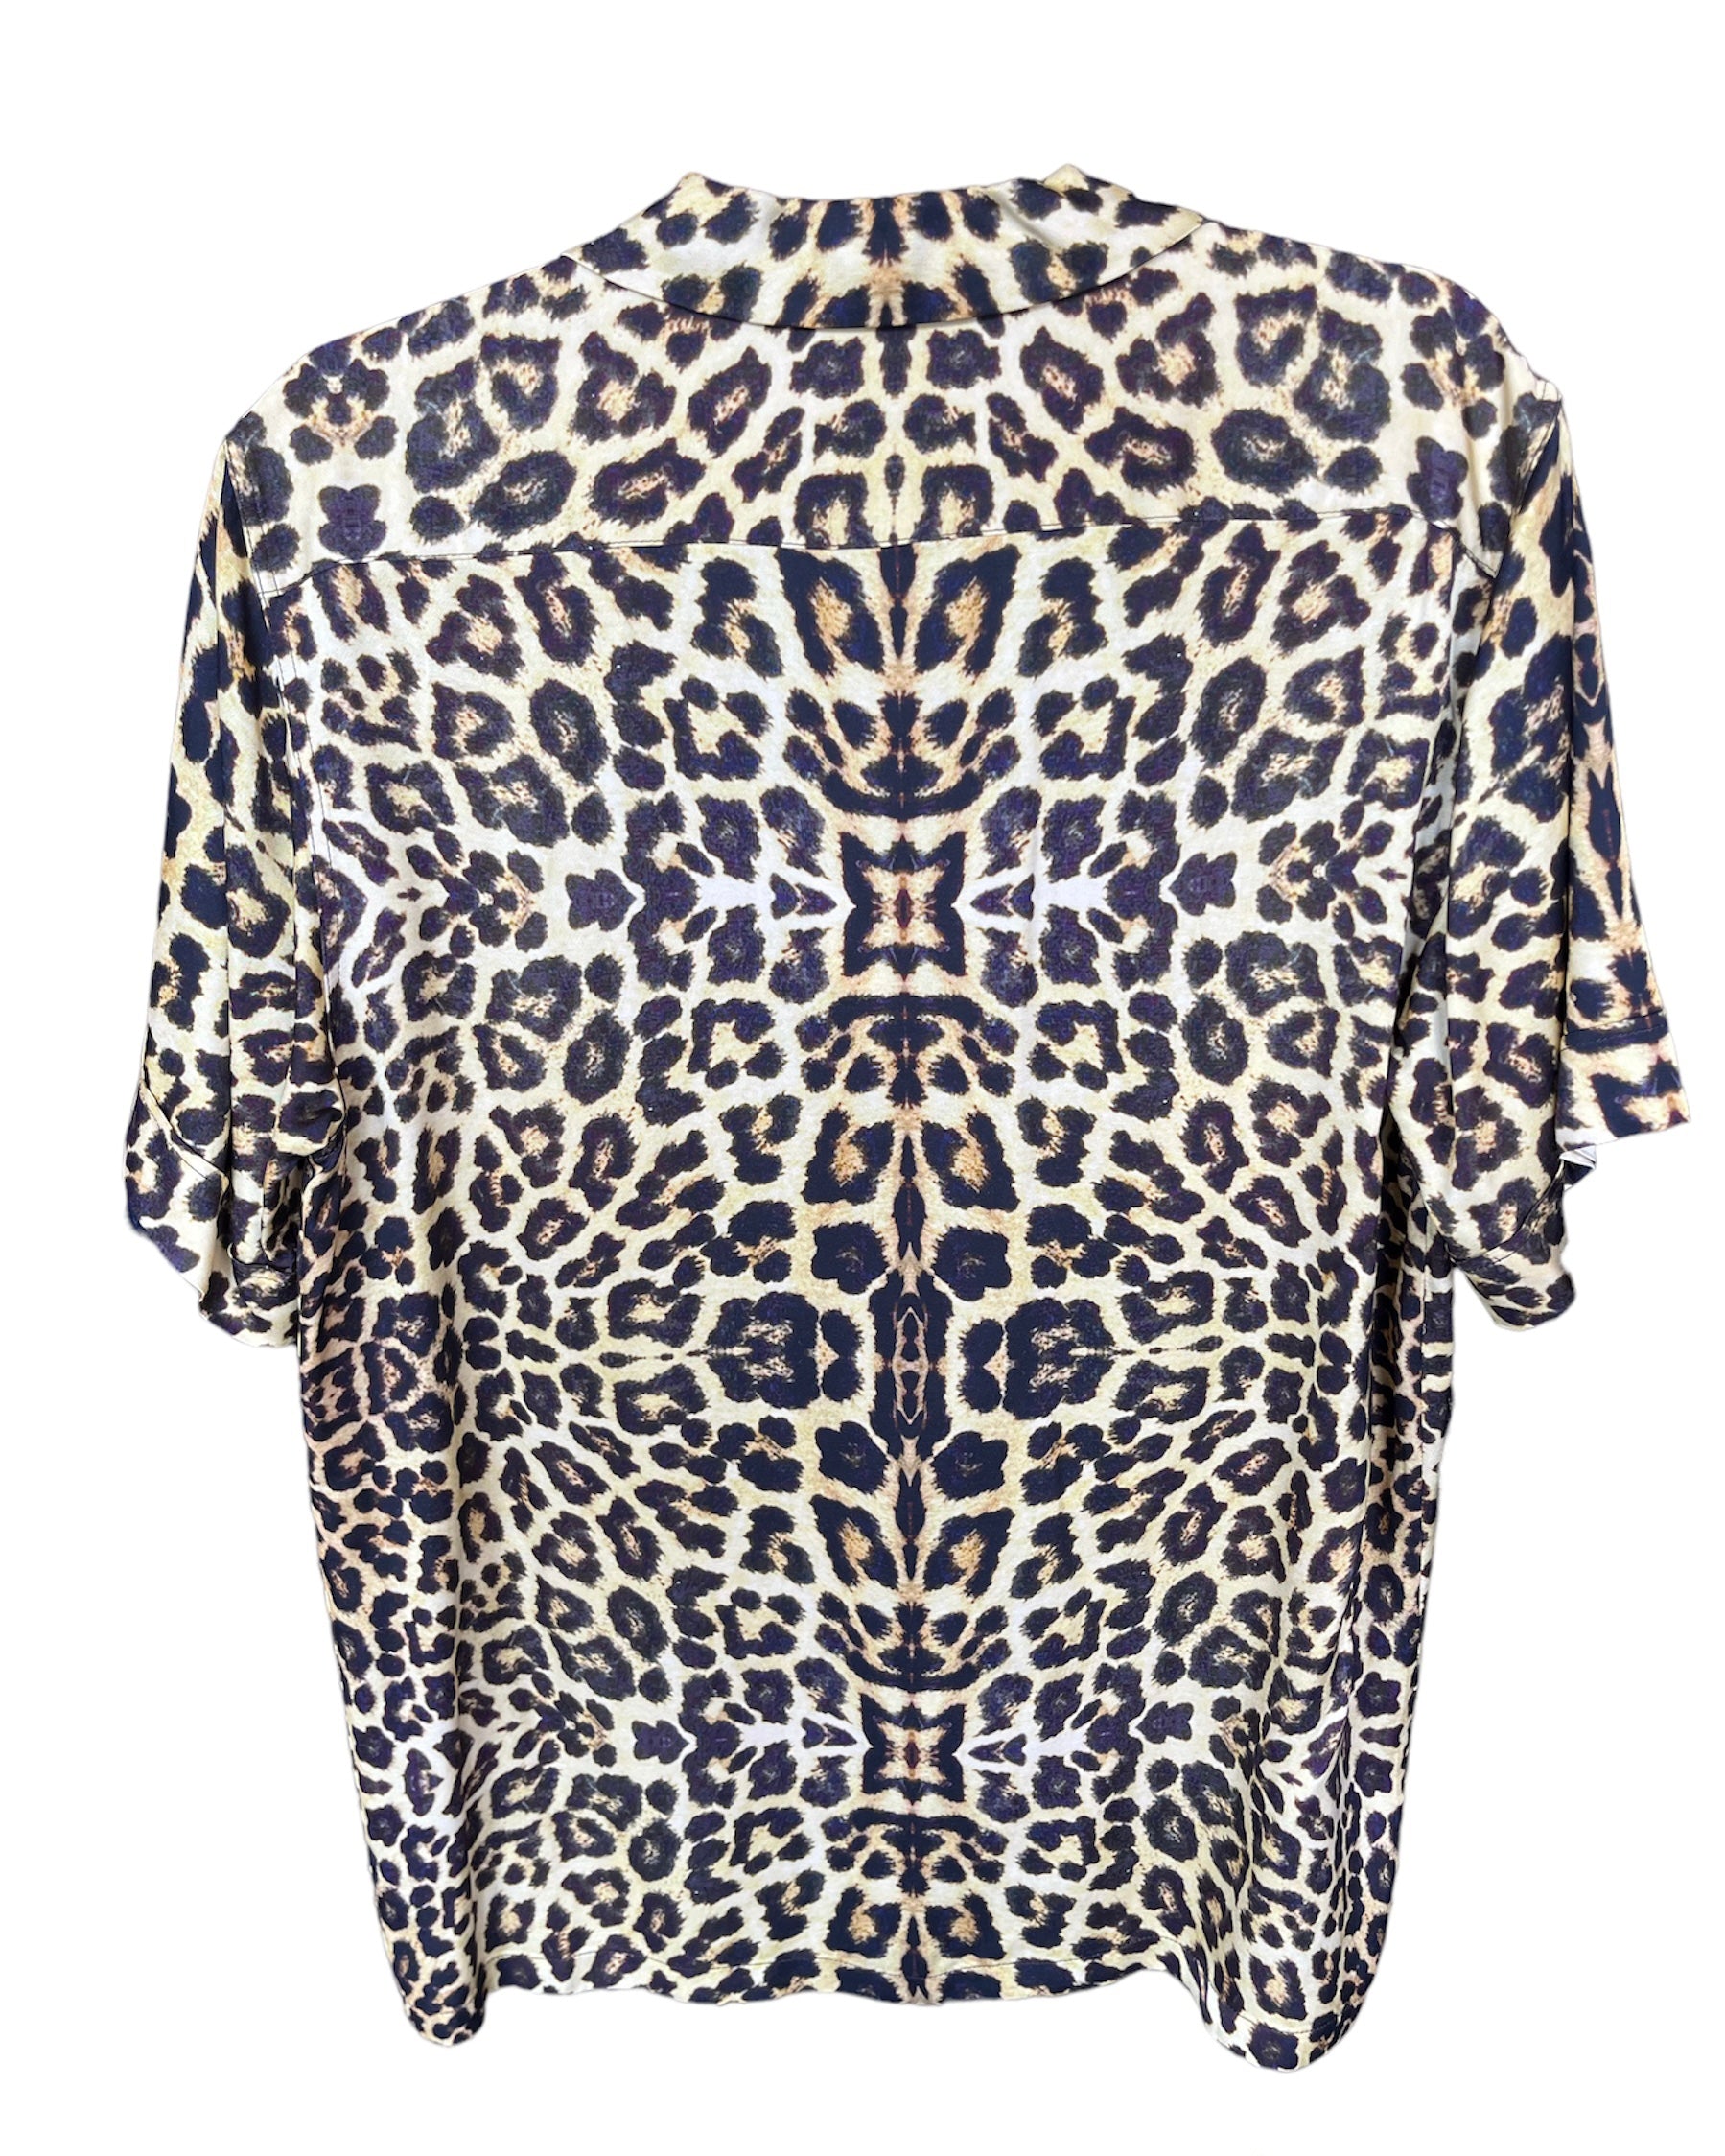 Dries van Noten Leopard Print T-shirt Top